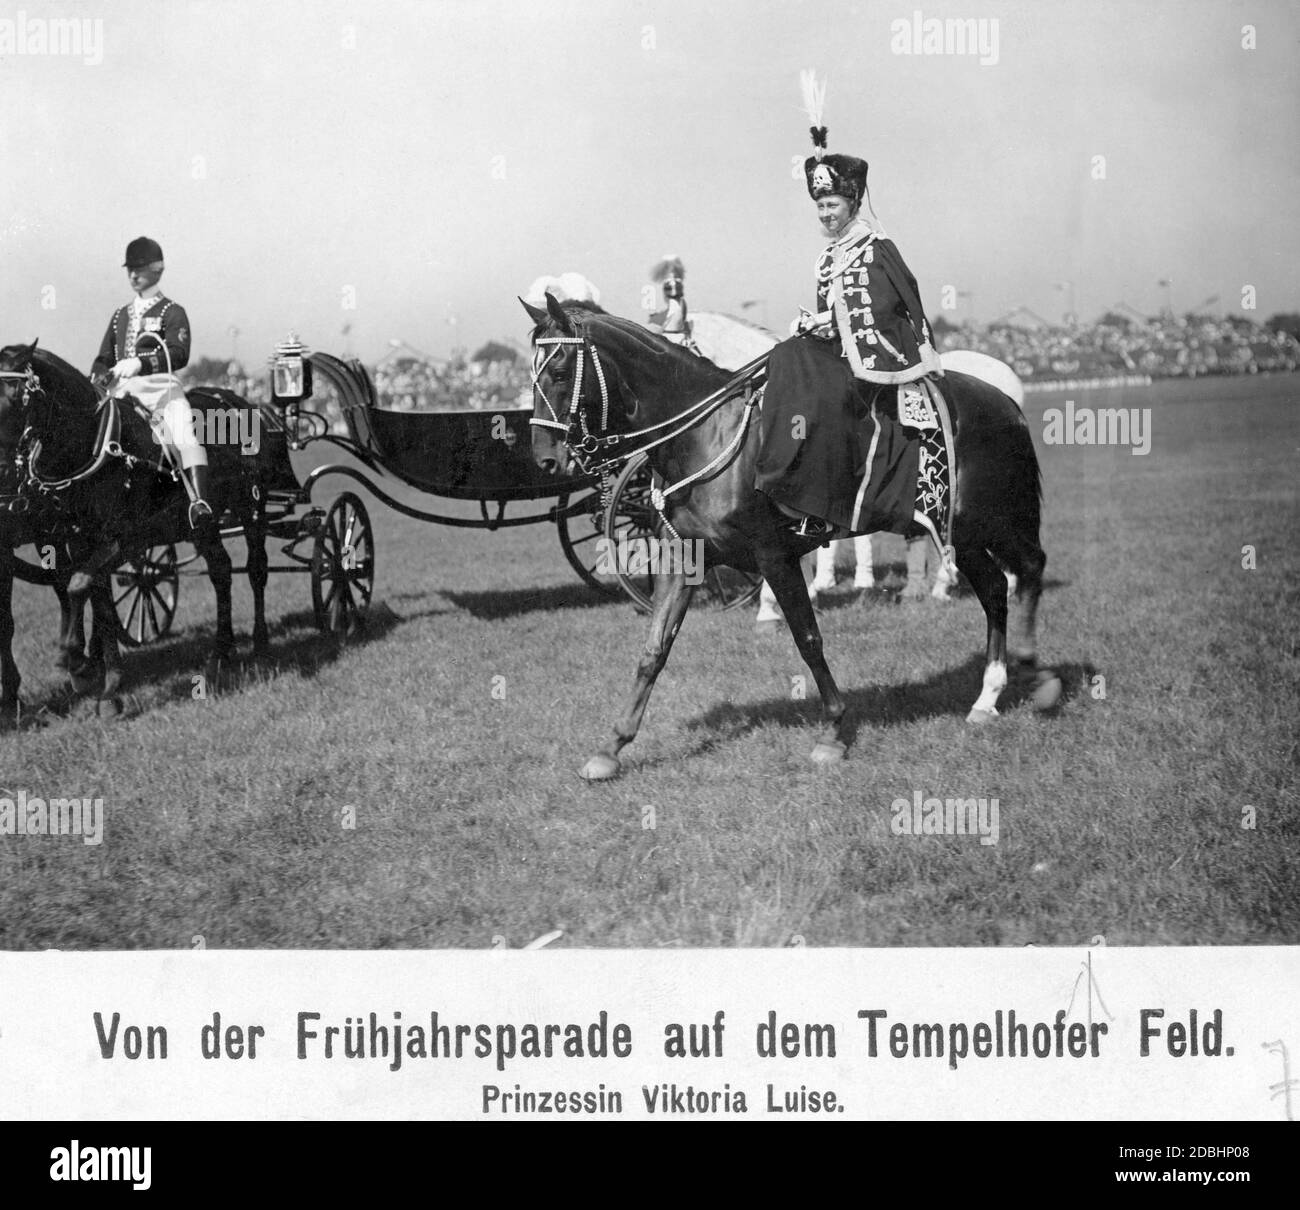 Princesse Victoria Louise de Prusse (dans l'uniforme du 2. Leib-Husaren-régiments „Koenigin Viktoria von Preussen“ Nr. 2) ont pris part au défilé de printemps sur le Tempelhofer Feld à Berlin en 1911. En arrière-plan, il y a des tribunes avec le public. Banque D'Images